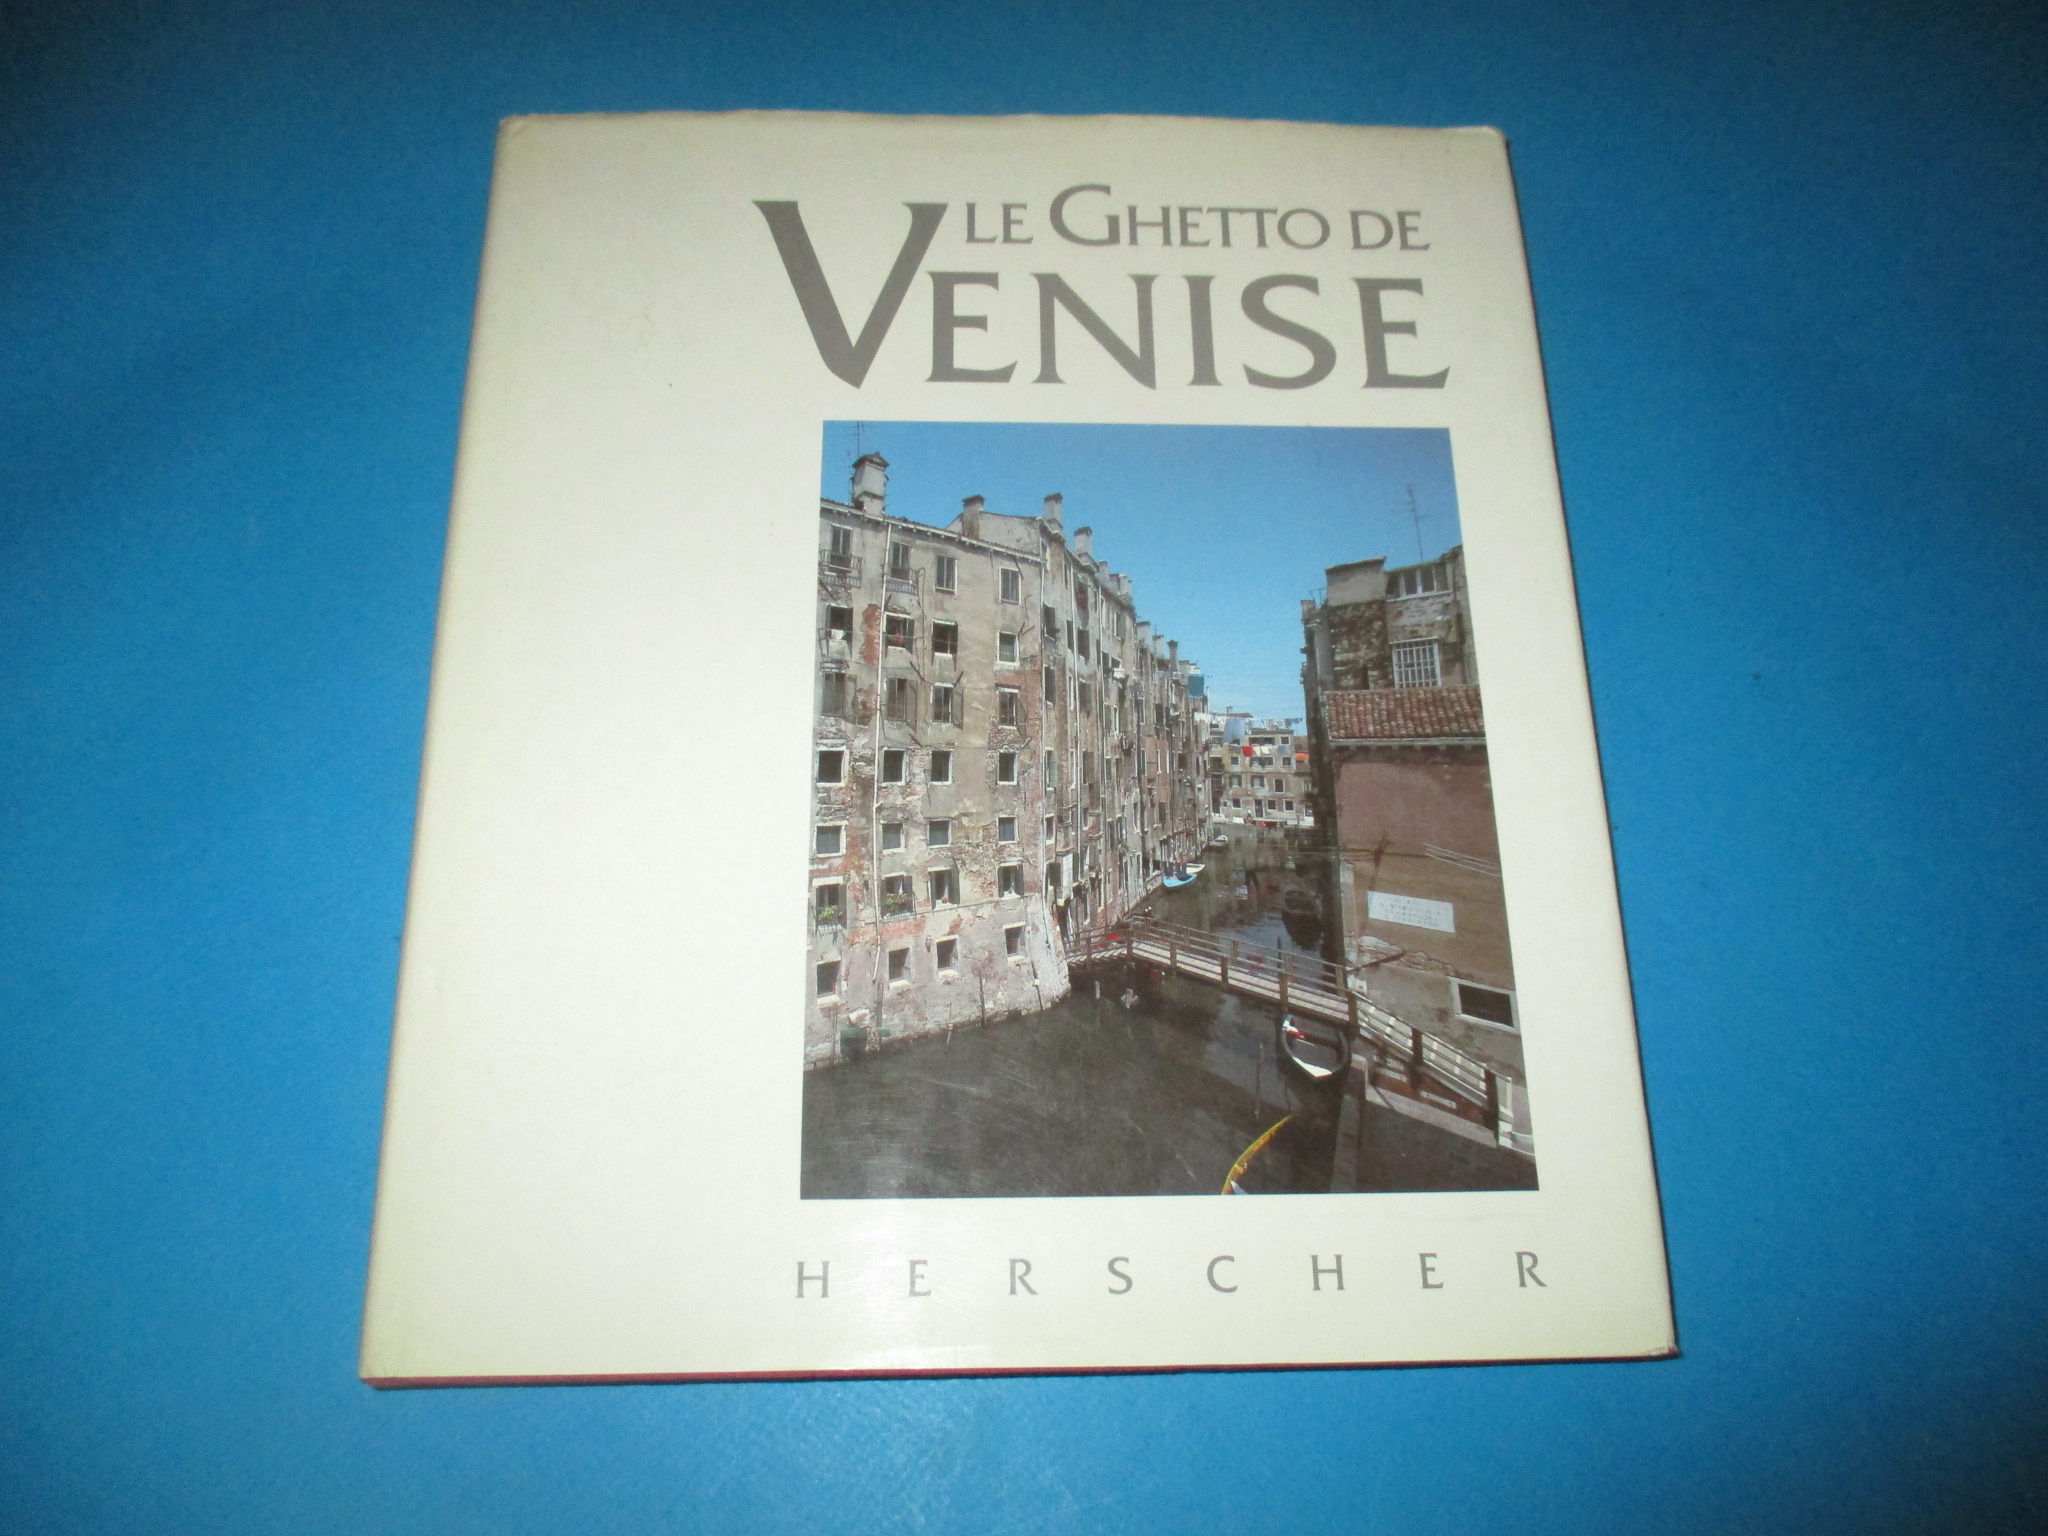 Le Ghetto de Venise, Roberta Curiel, Bernard Dov Cooperman, Graziano Arici, Herscher